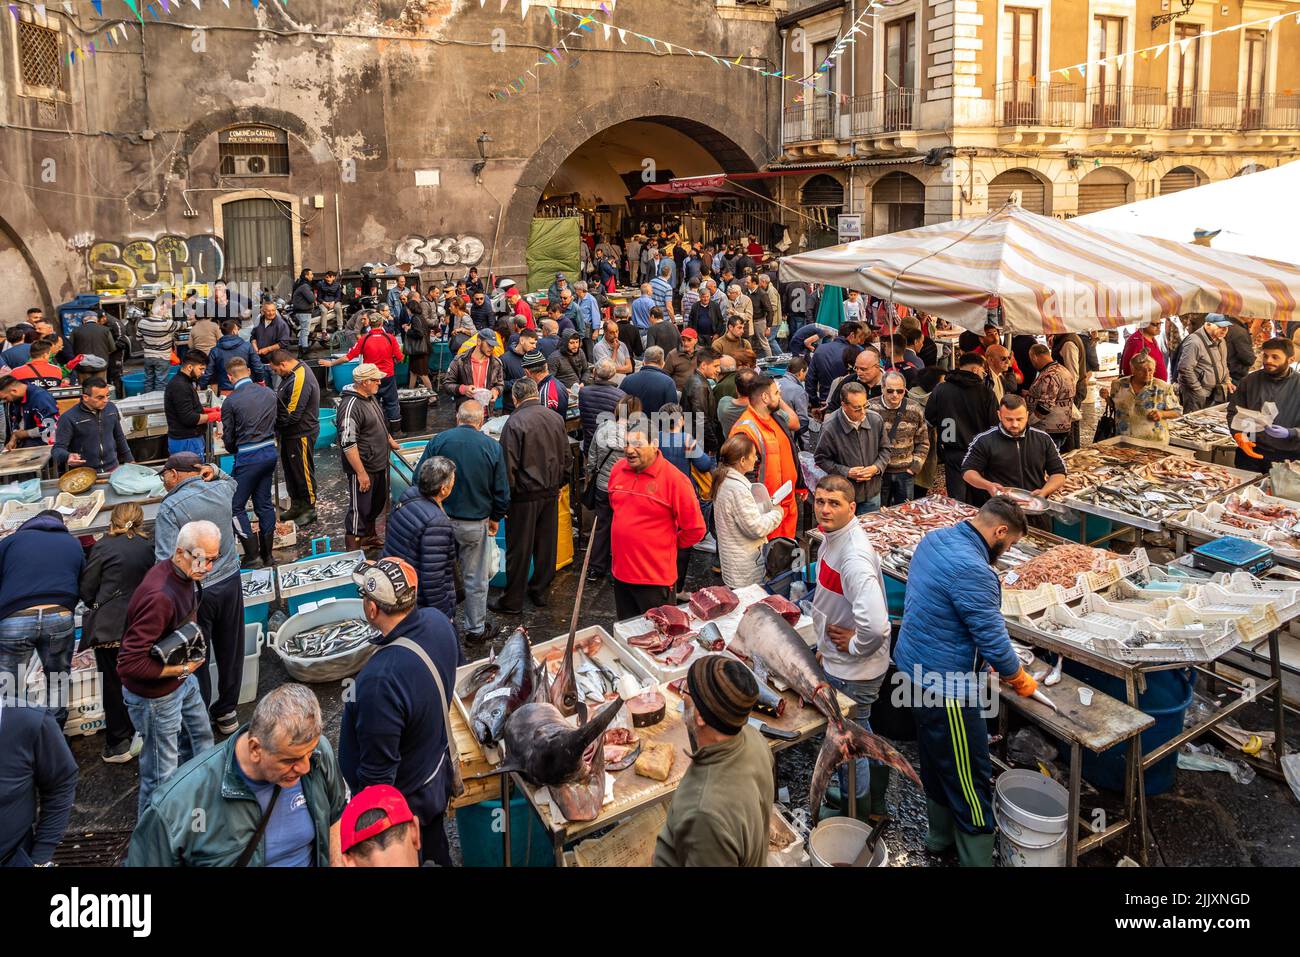 Catania, Italia - 11 de mayo de 2019: La Pescheria, el famoso mercado histórico de pescado en Catania, Sicilia. Foto de stock